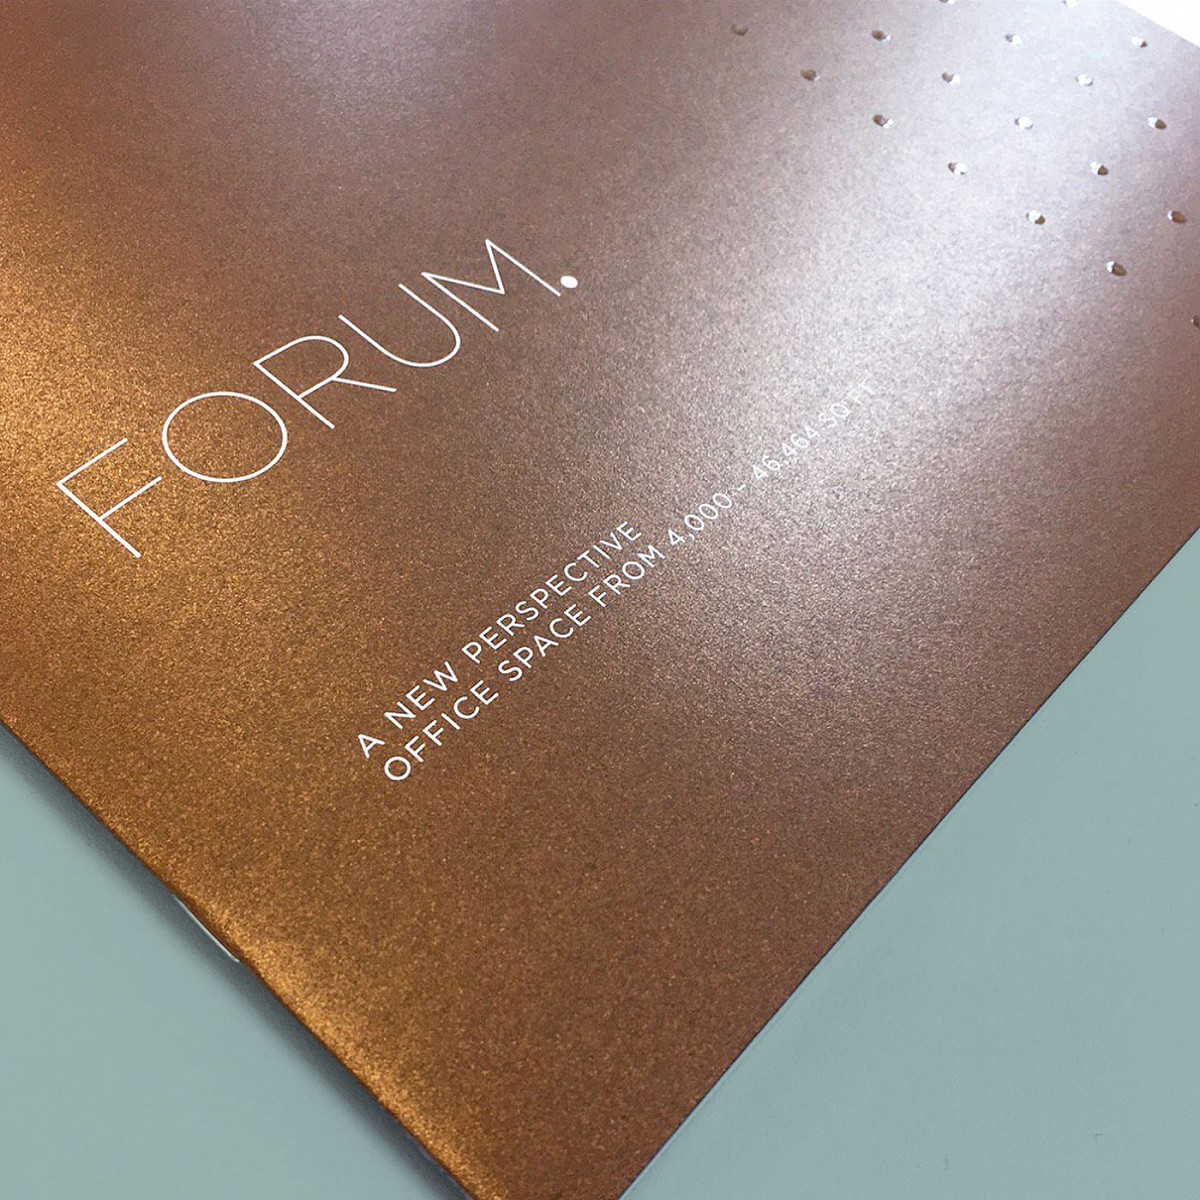 Forum Signage Design